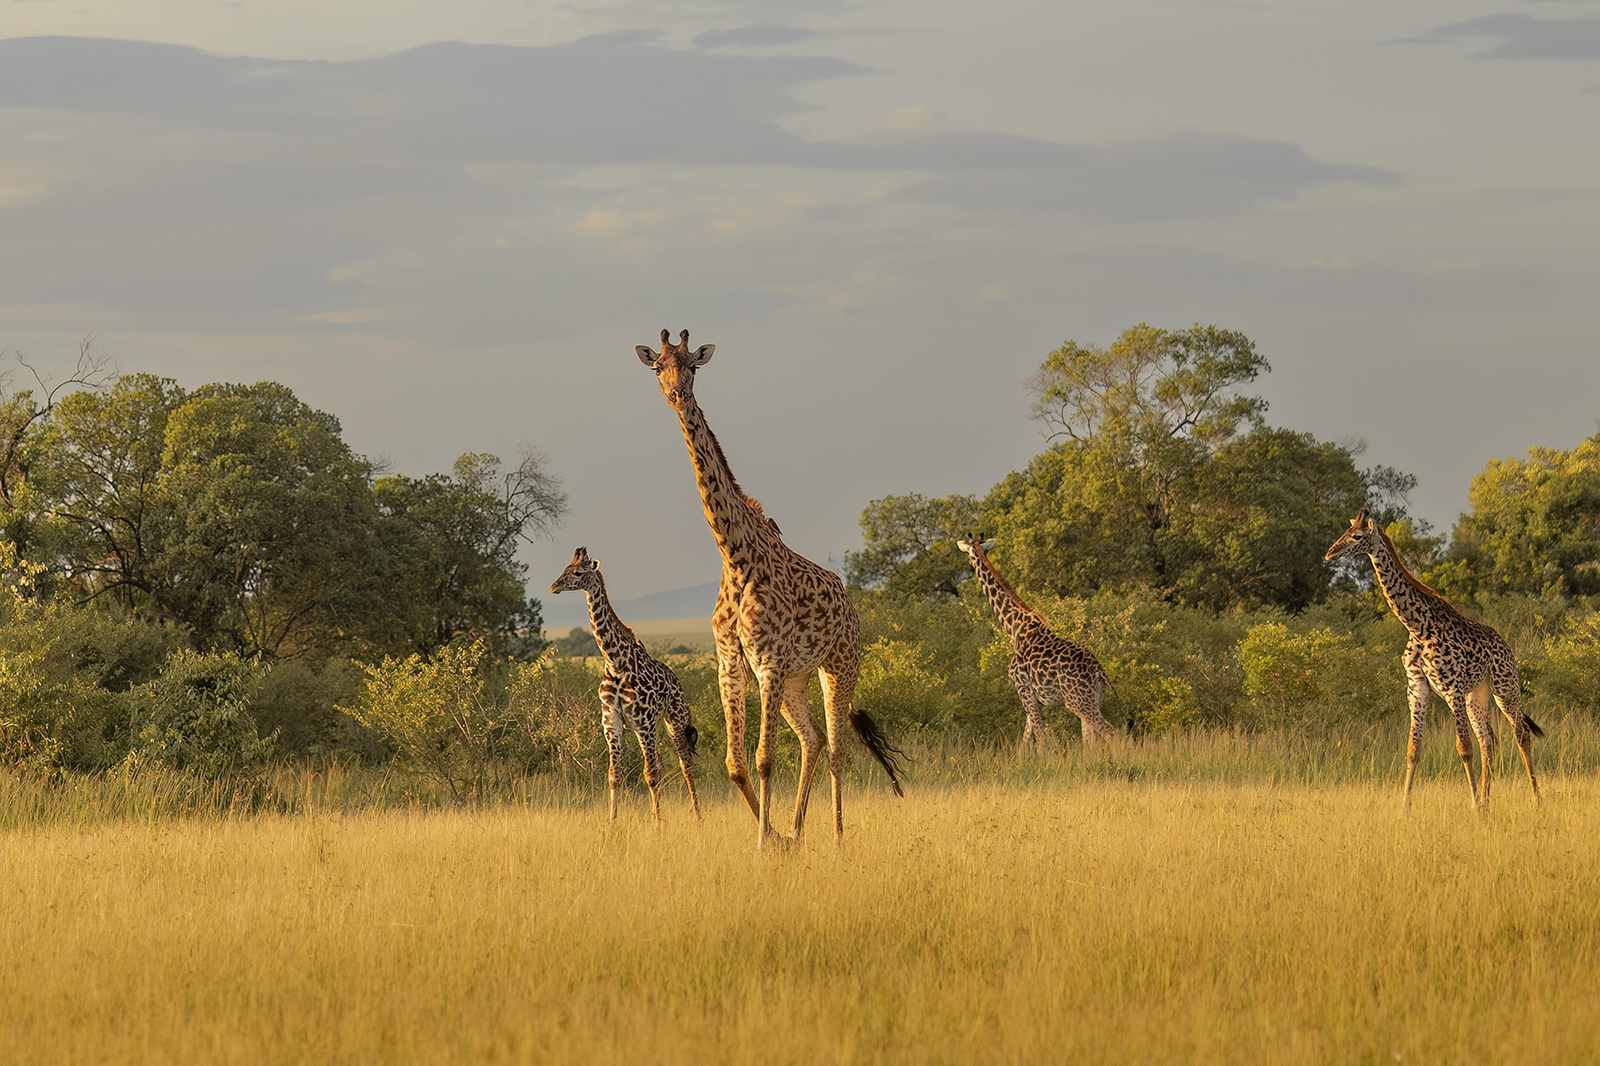 Masai Giraffe (Giraffa tippelskirchi ); Masai Mara, Kenya